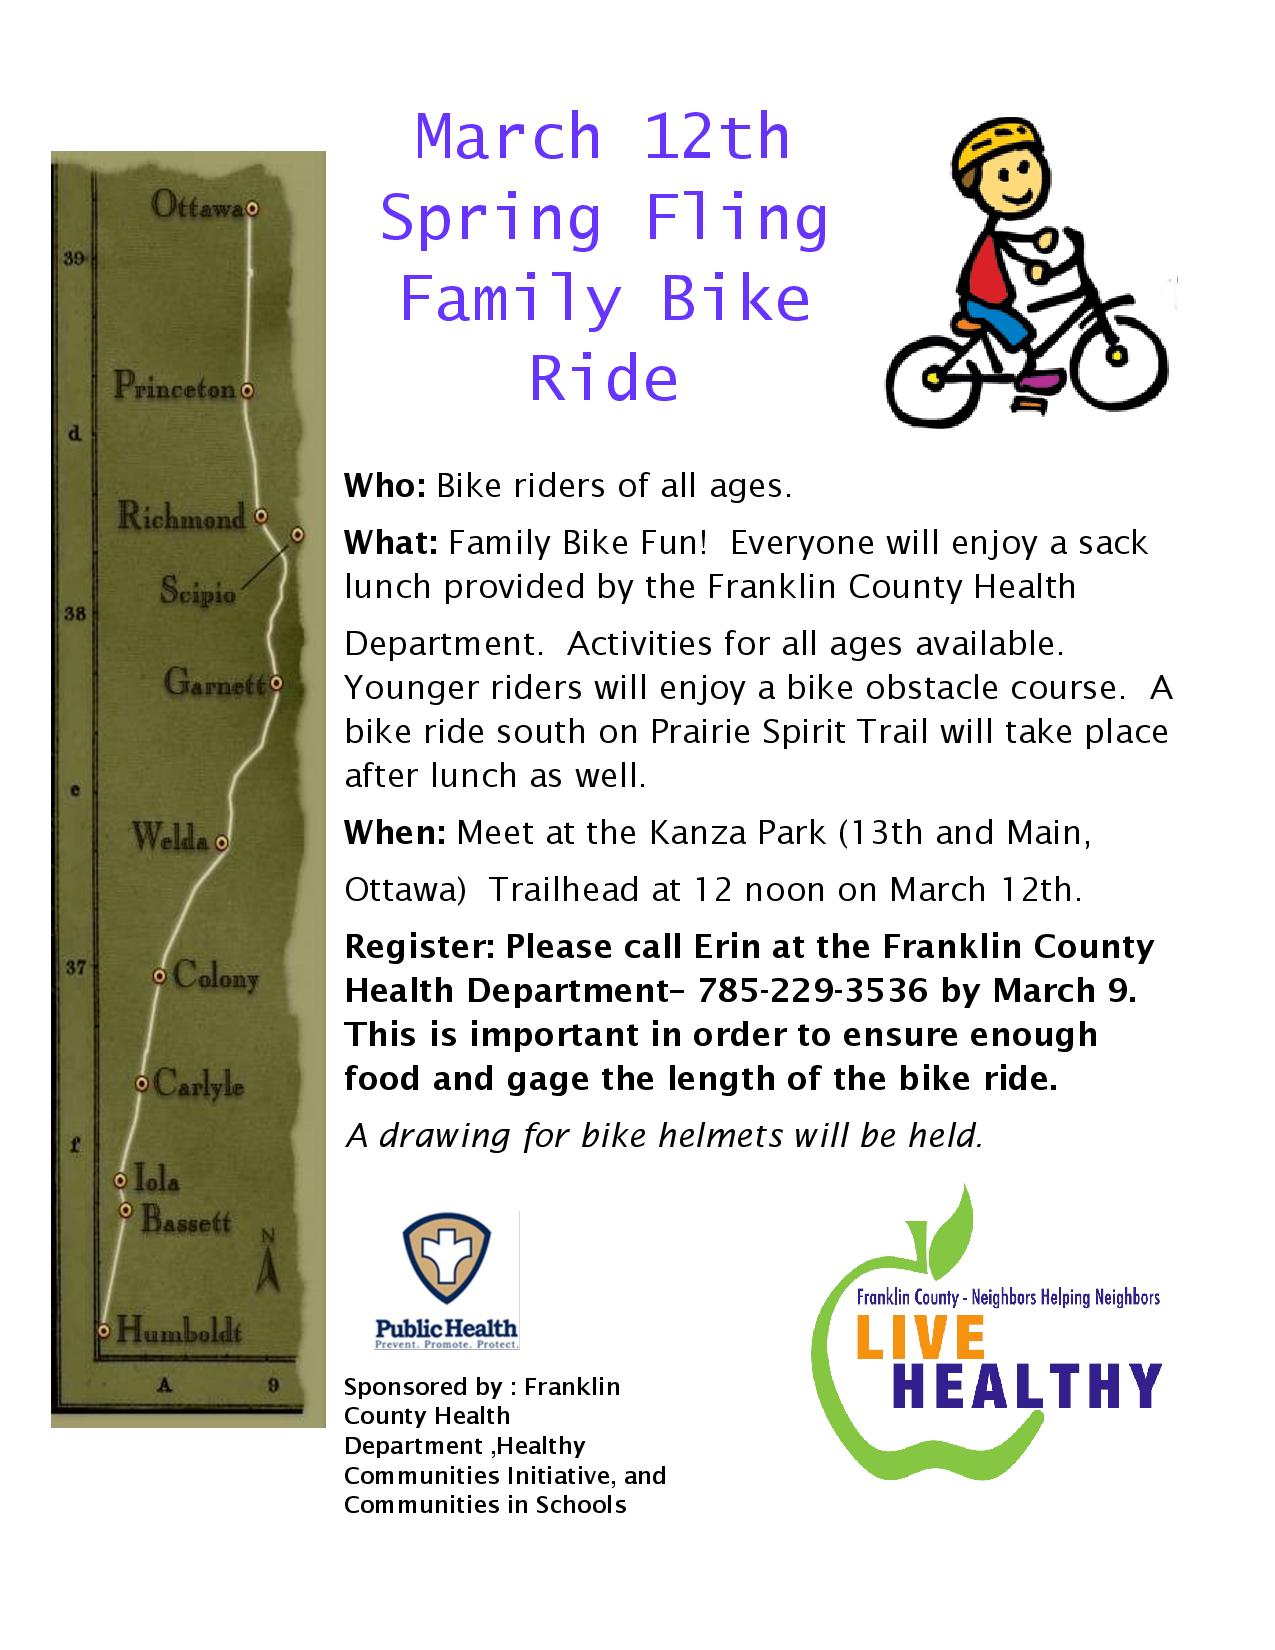 spring fling bike ride 2016 flyer